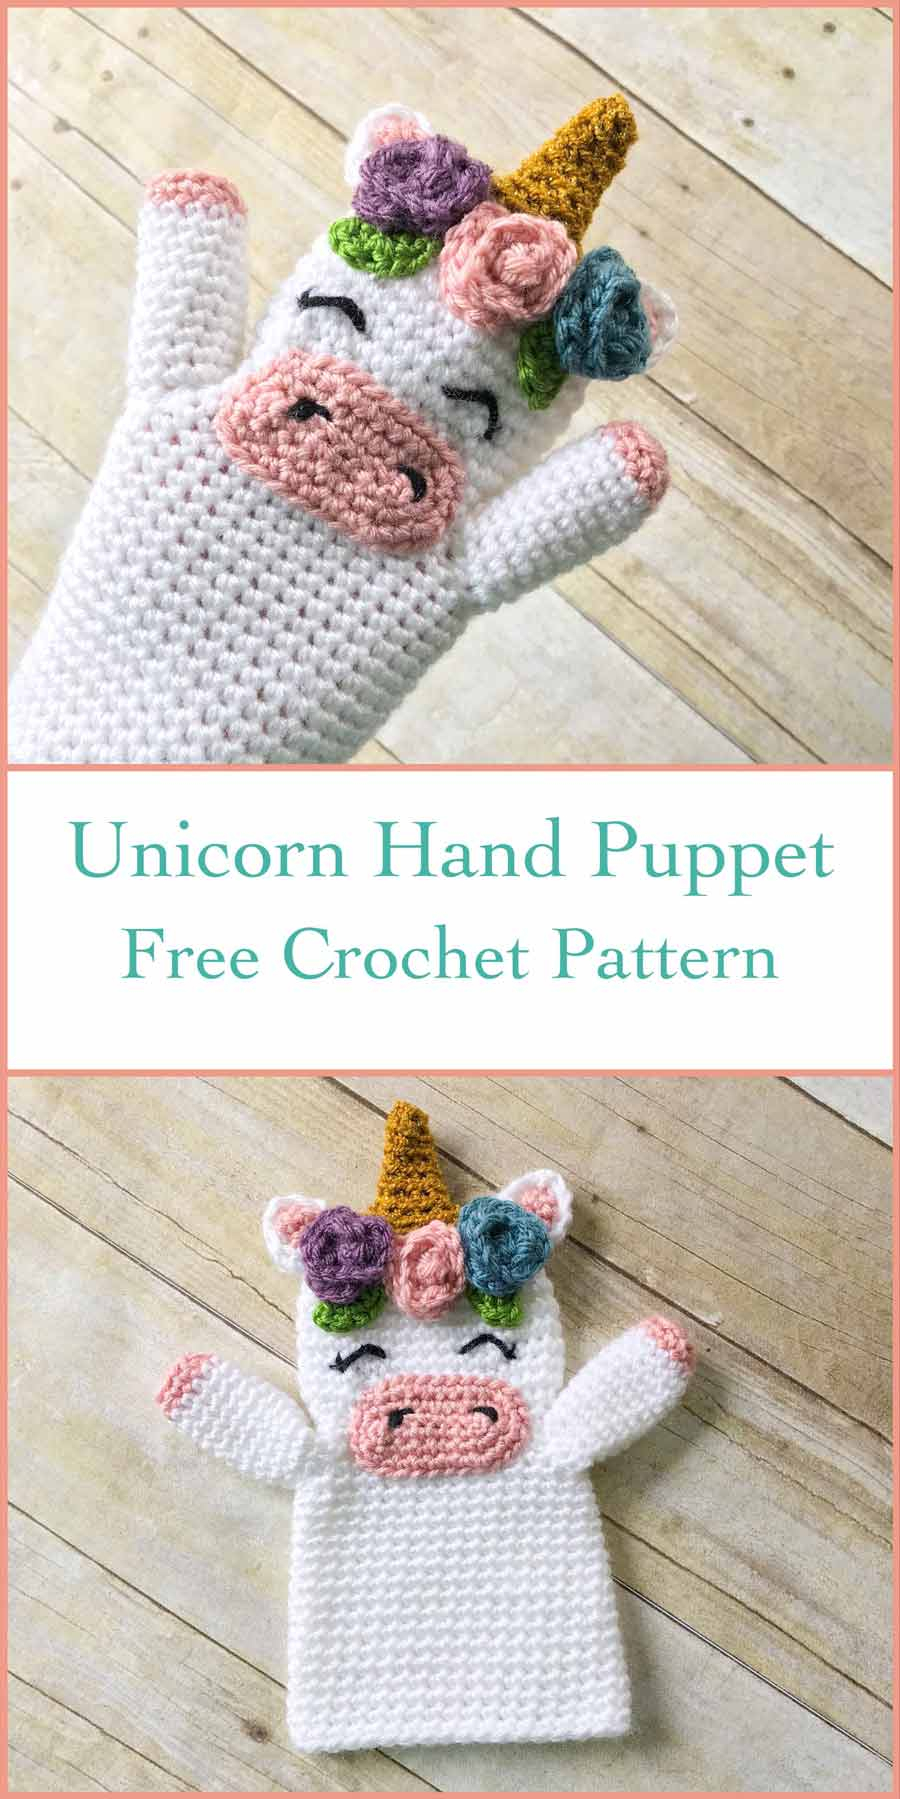 Unicorn Crochet Pattern Free Crochet Unicorn Hand Puppet Free Crochet Pattern Crochet Kingdom